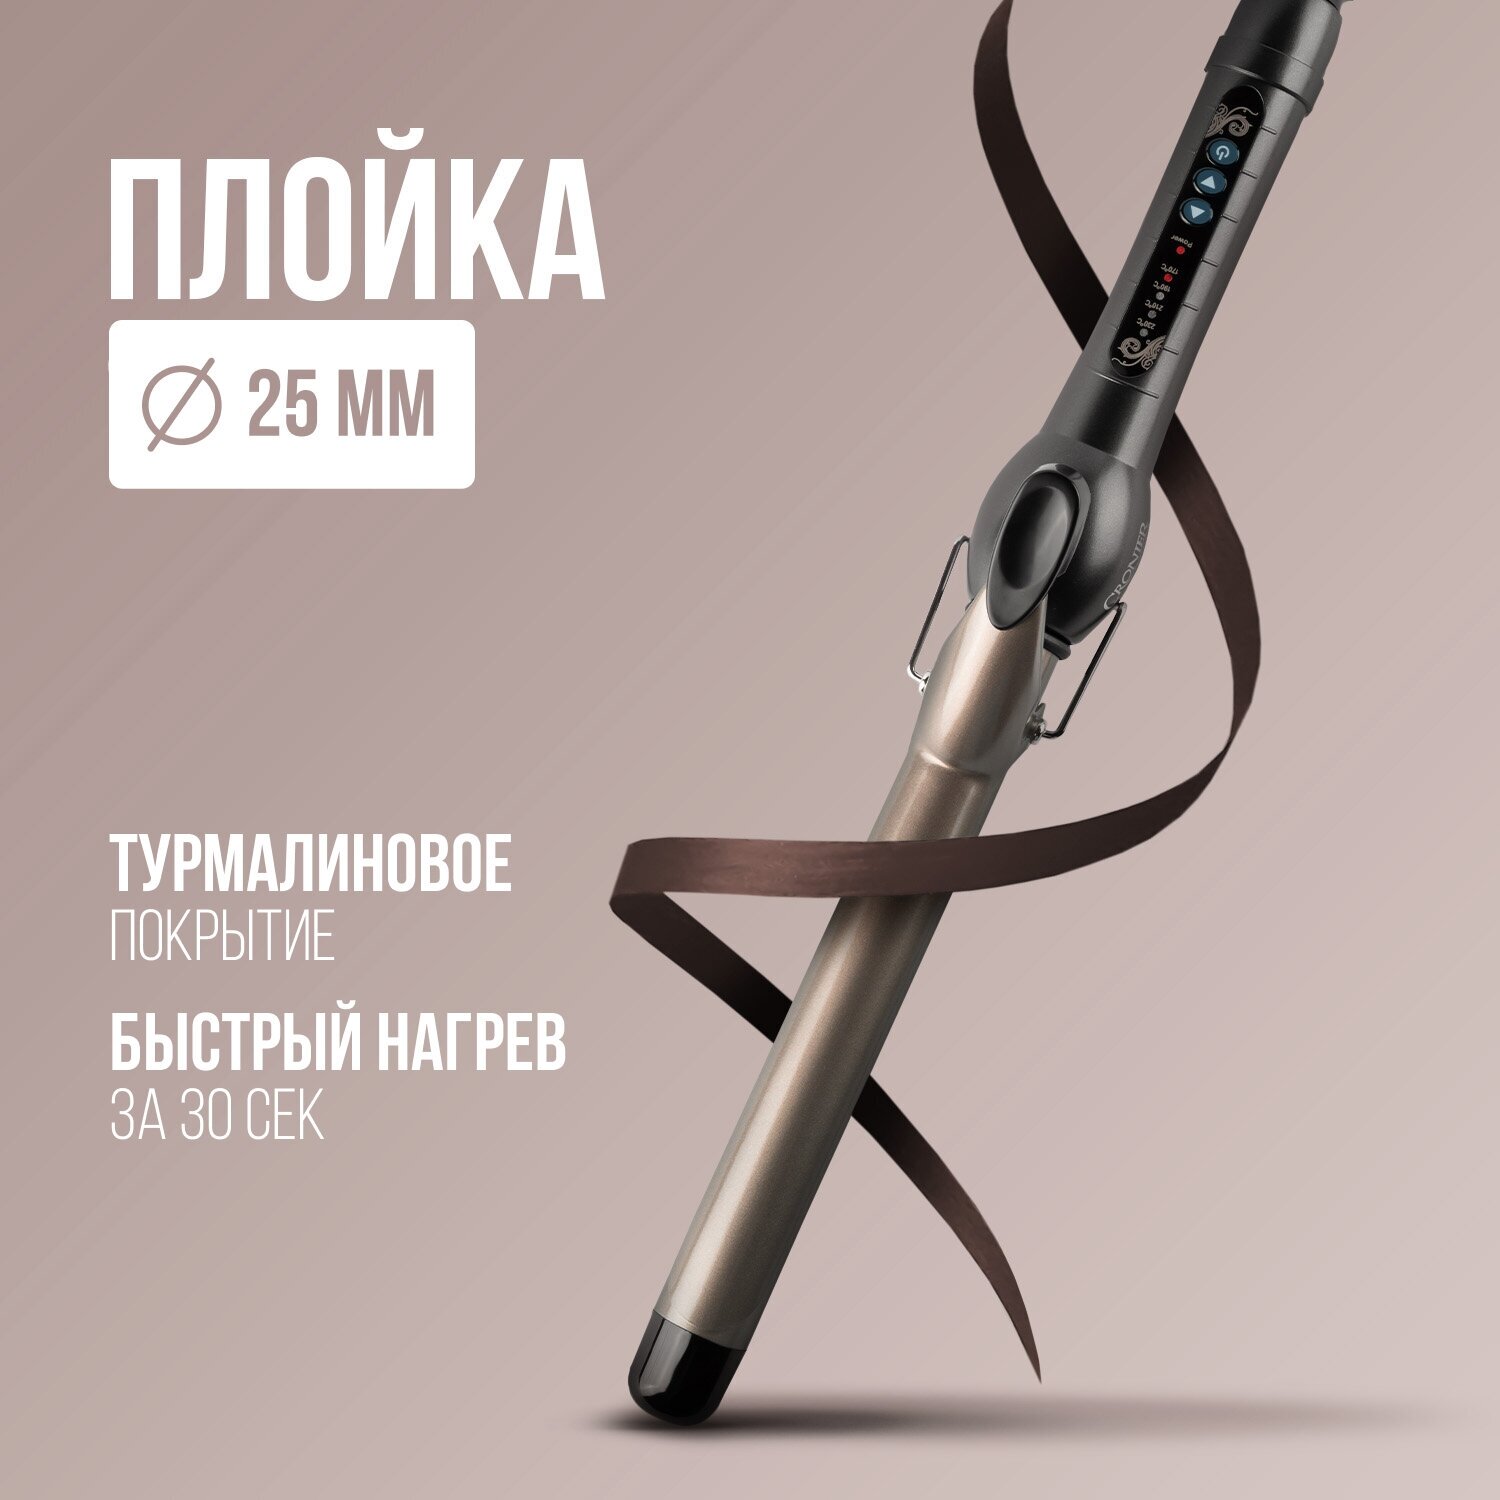 Плойка для волос для завивки и укладки локонов — купить в интернет-магазине по низкой цене на Яндекс Маркете